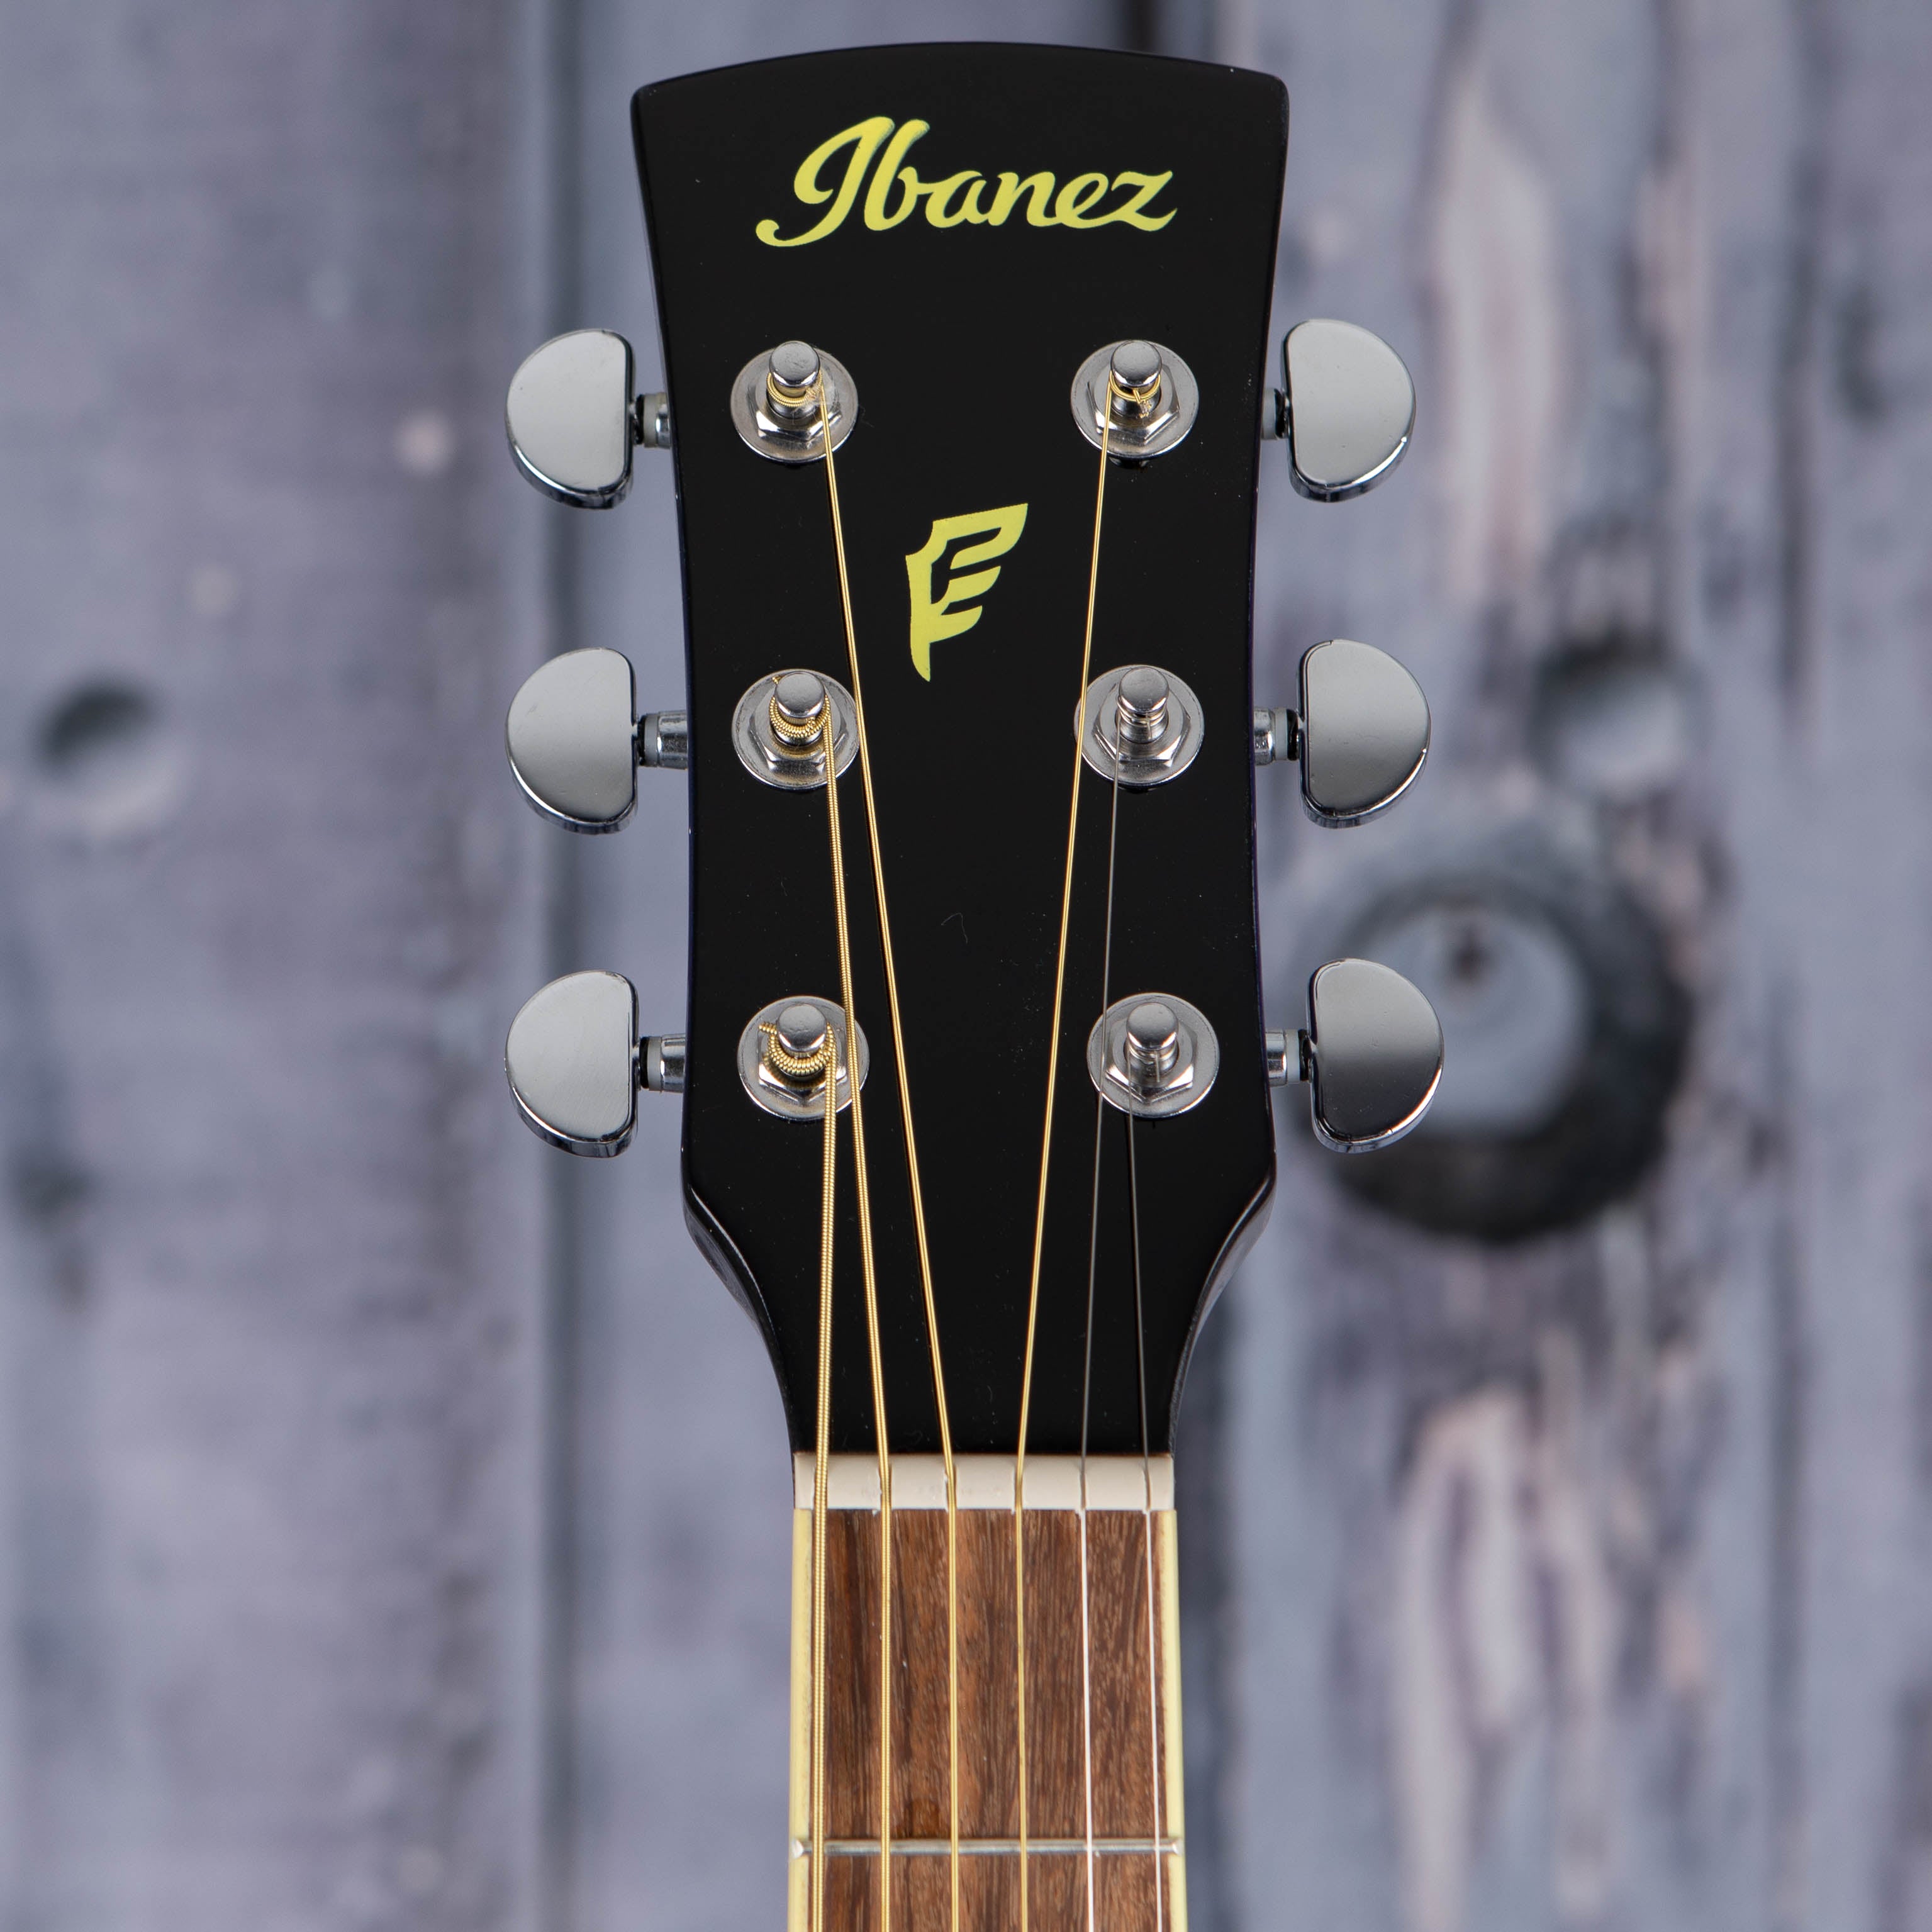 Ibanez PF15ECE Acoustic/Electric Guitar, Transparent Blue Sunburst, front headstock